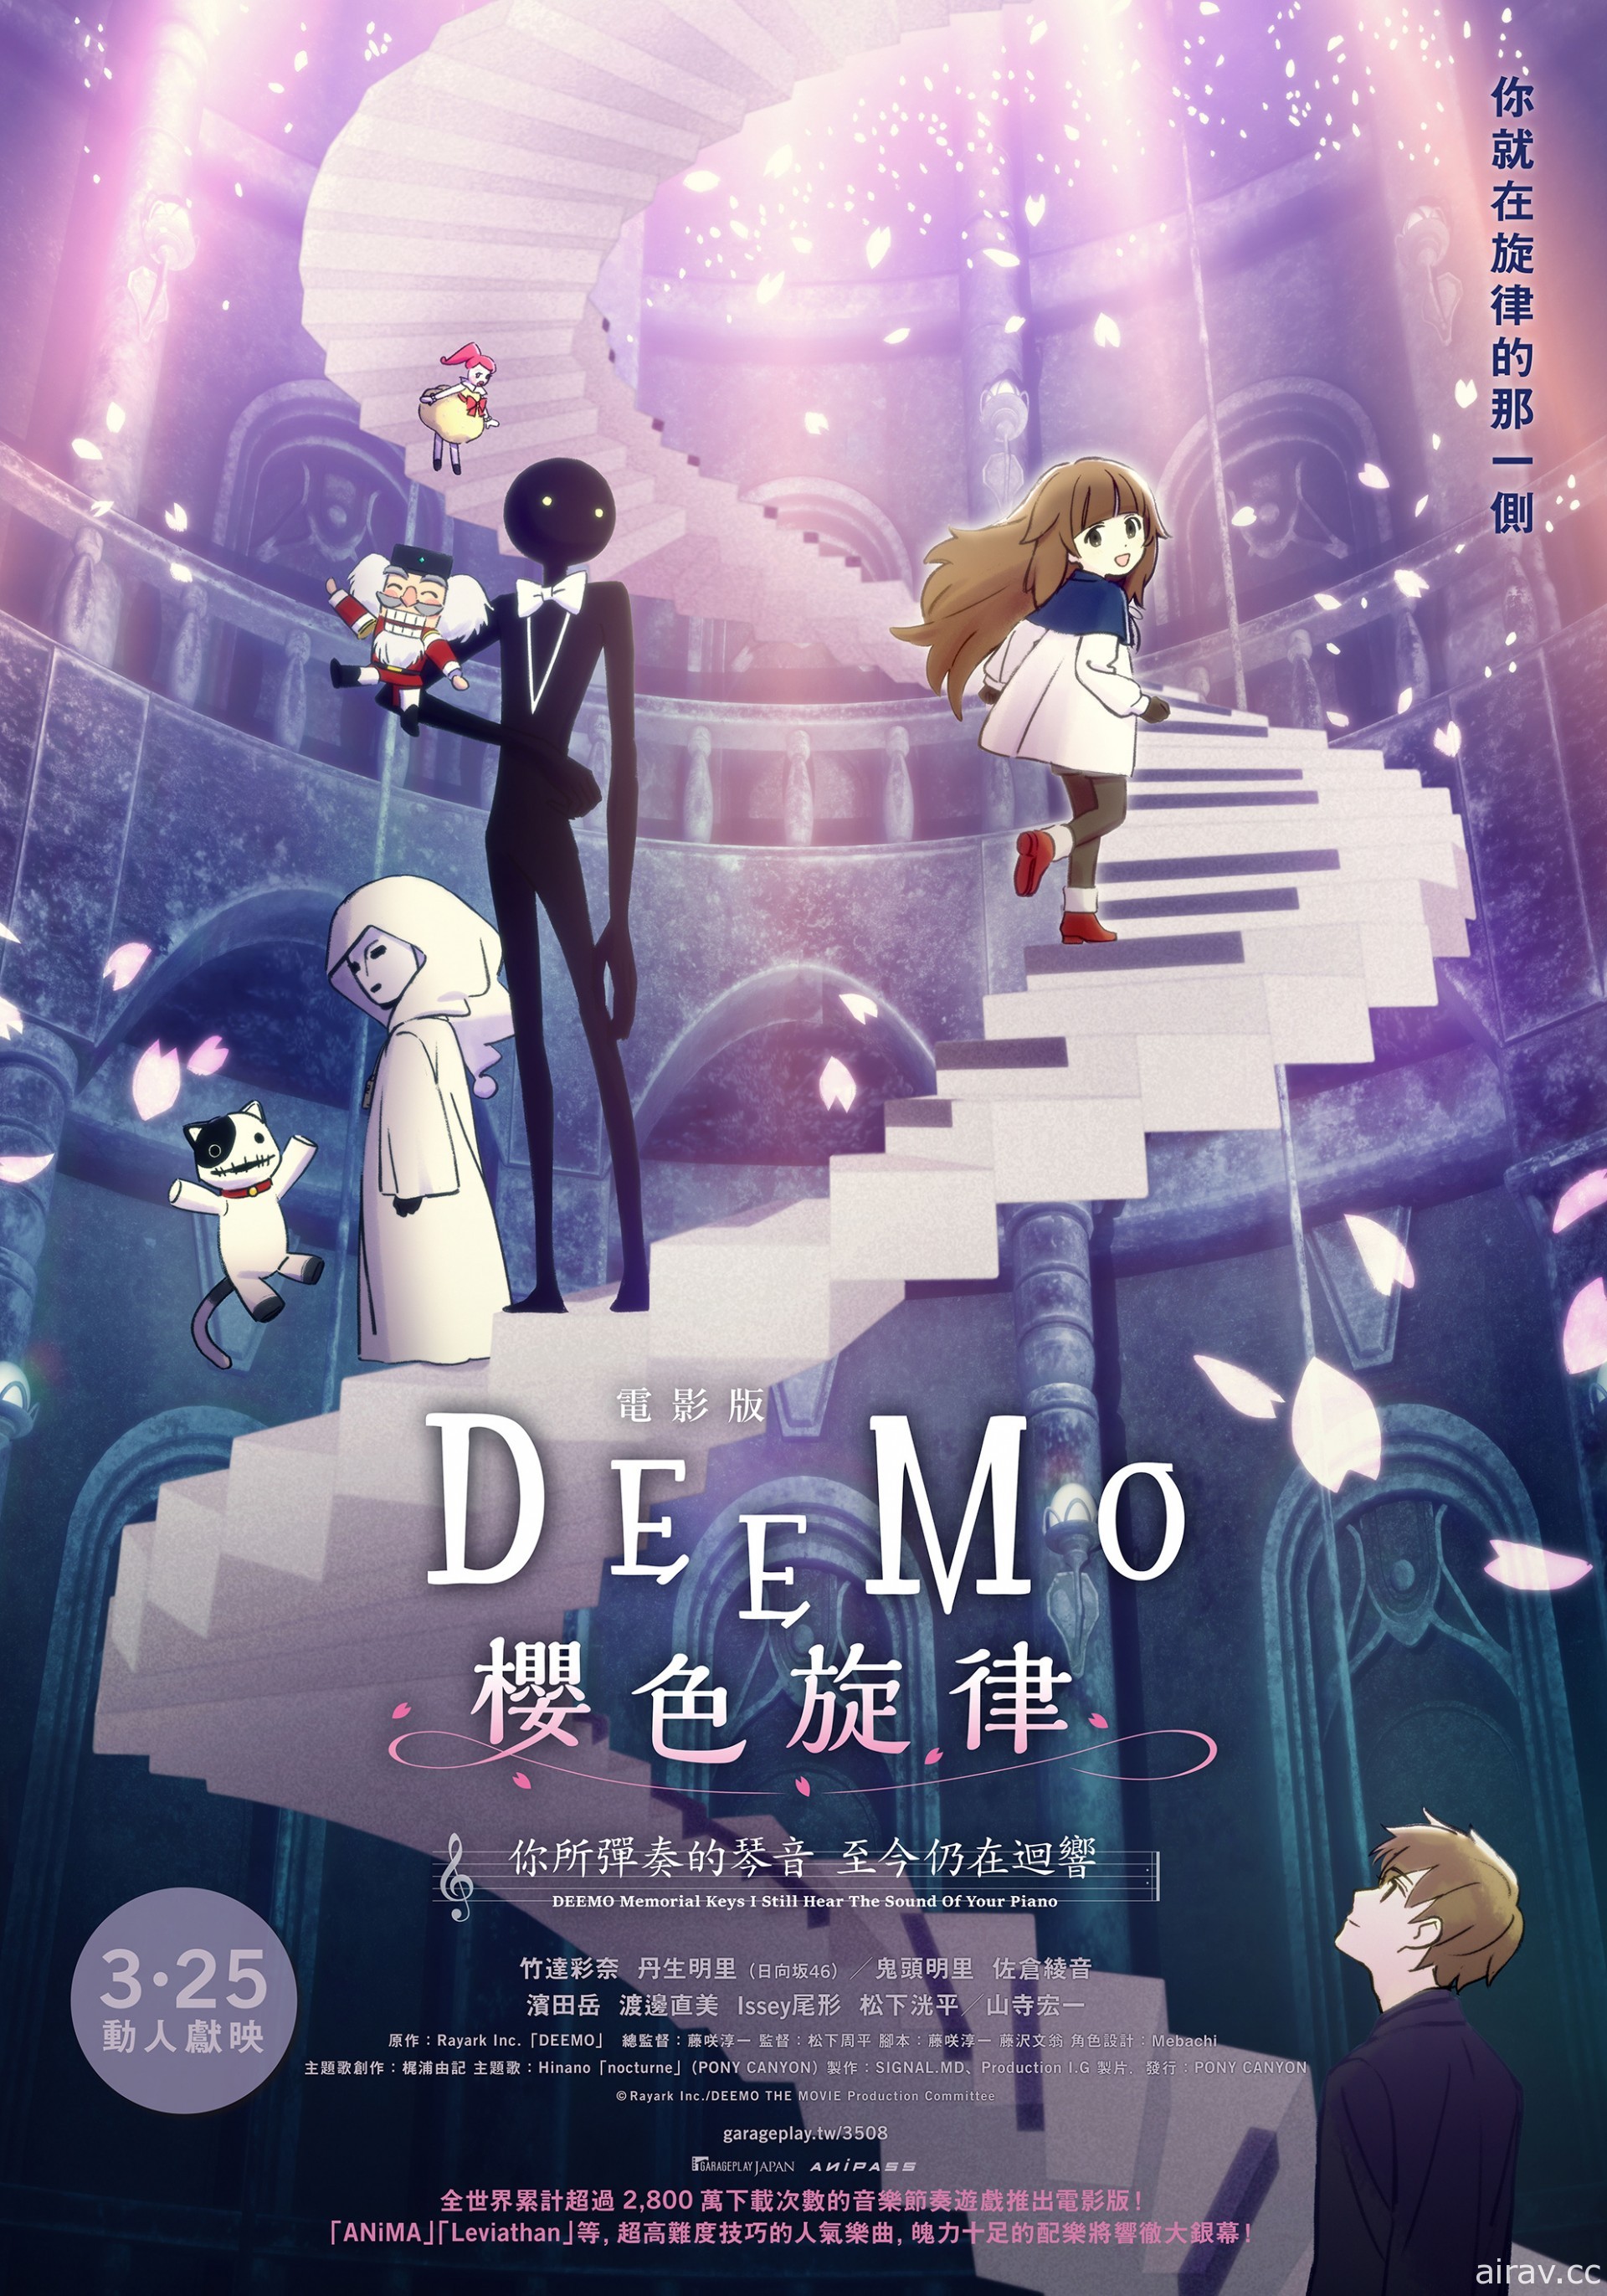 《電影版 DEEMO 櫻色旋律》本周上映 周末將辦會員特別場